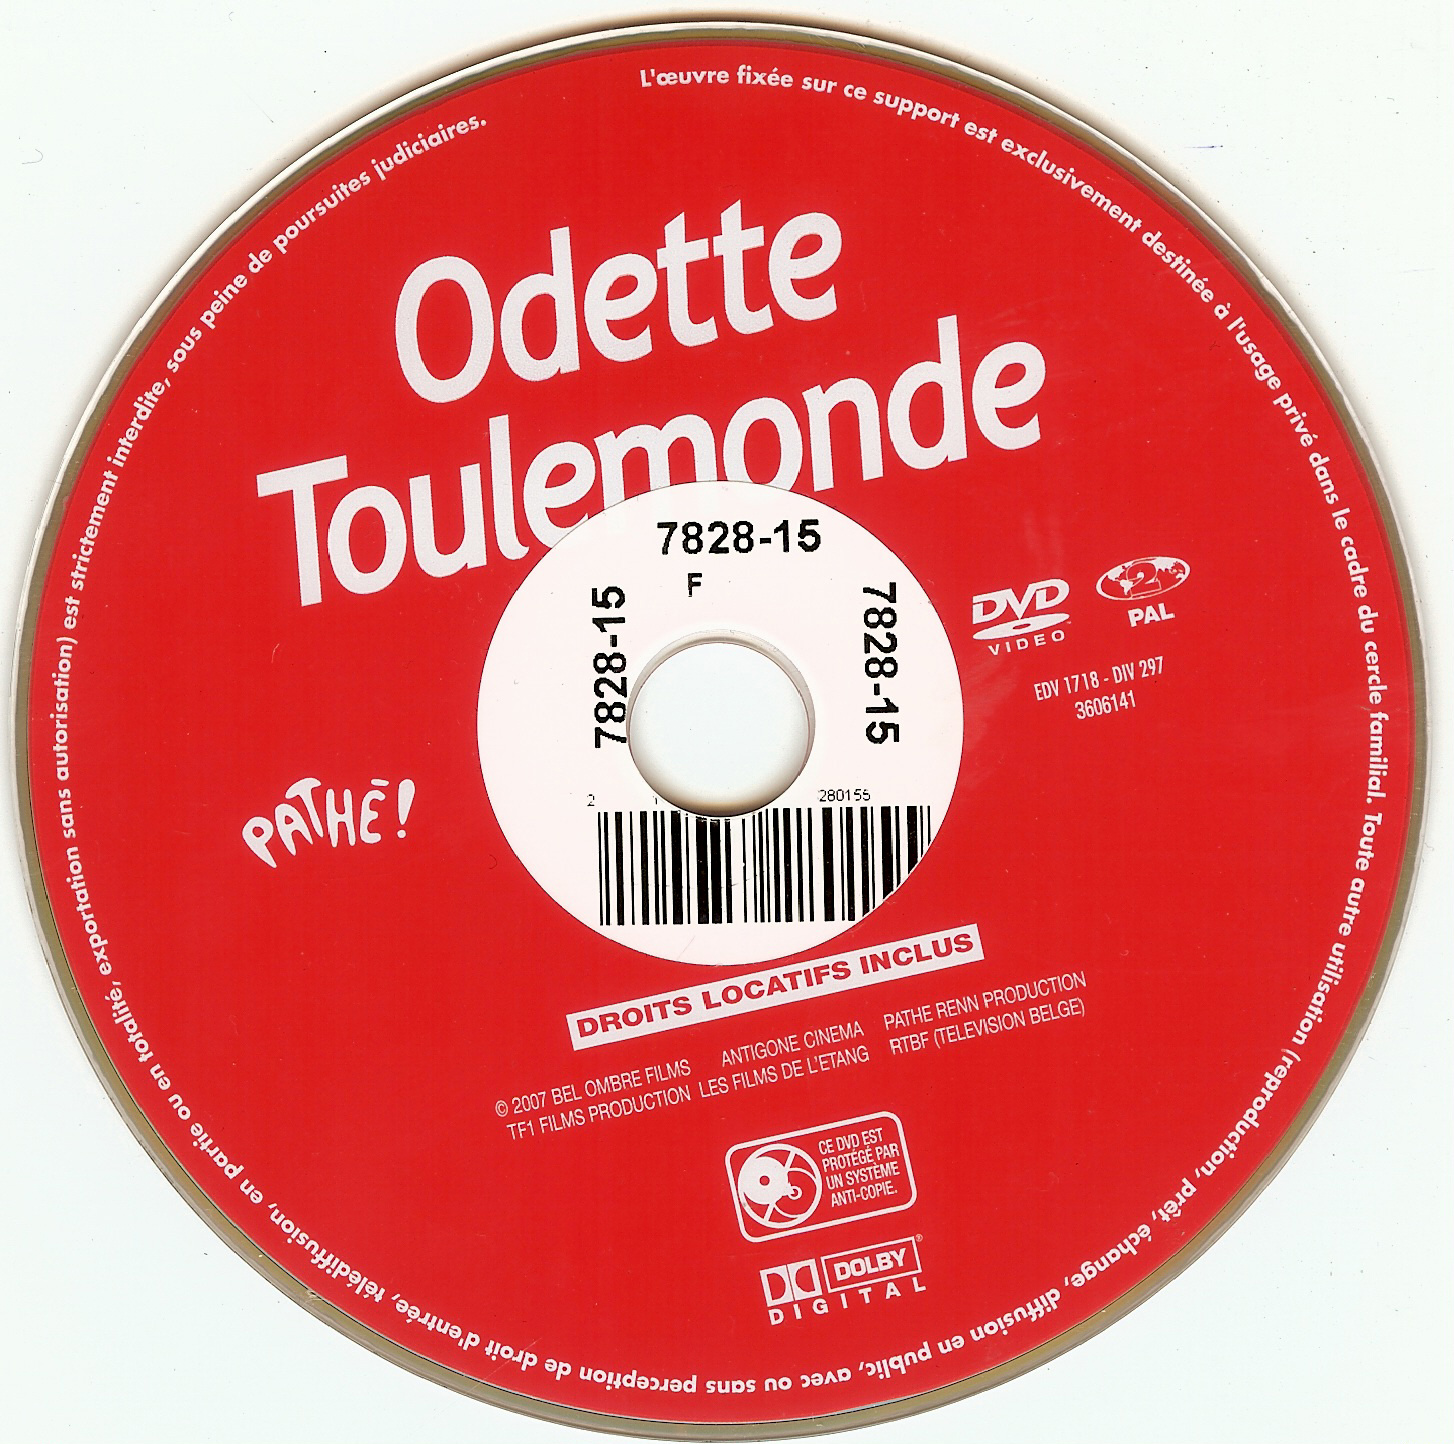 Odette Toulemonde v2